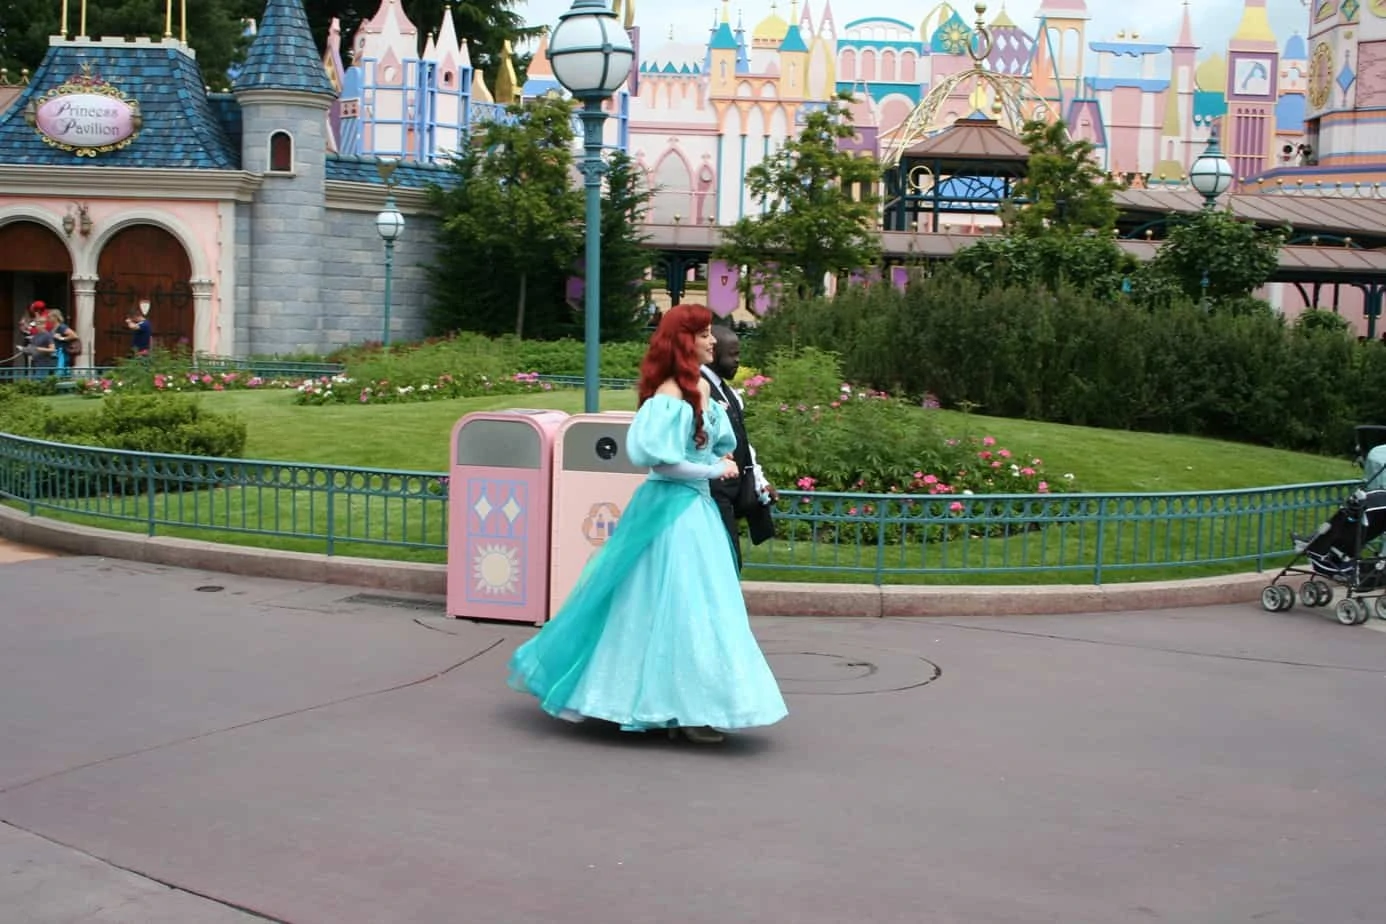 Disney prinsessen in het Disneyland Park